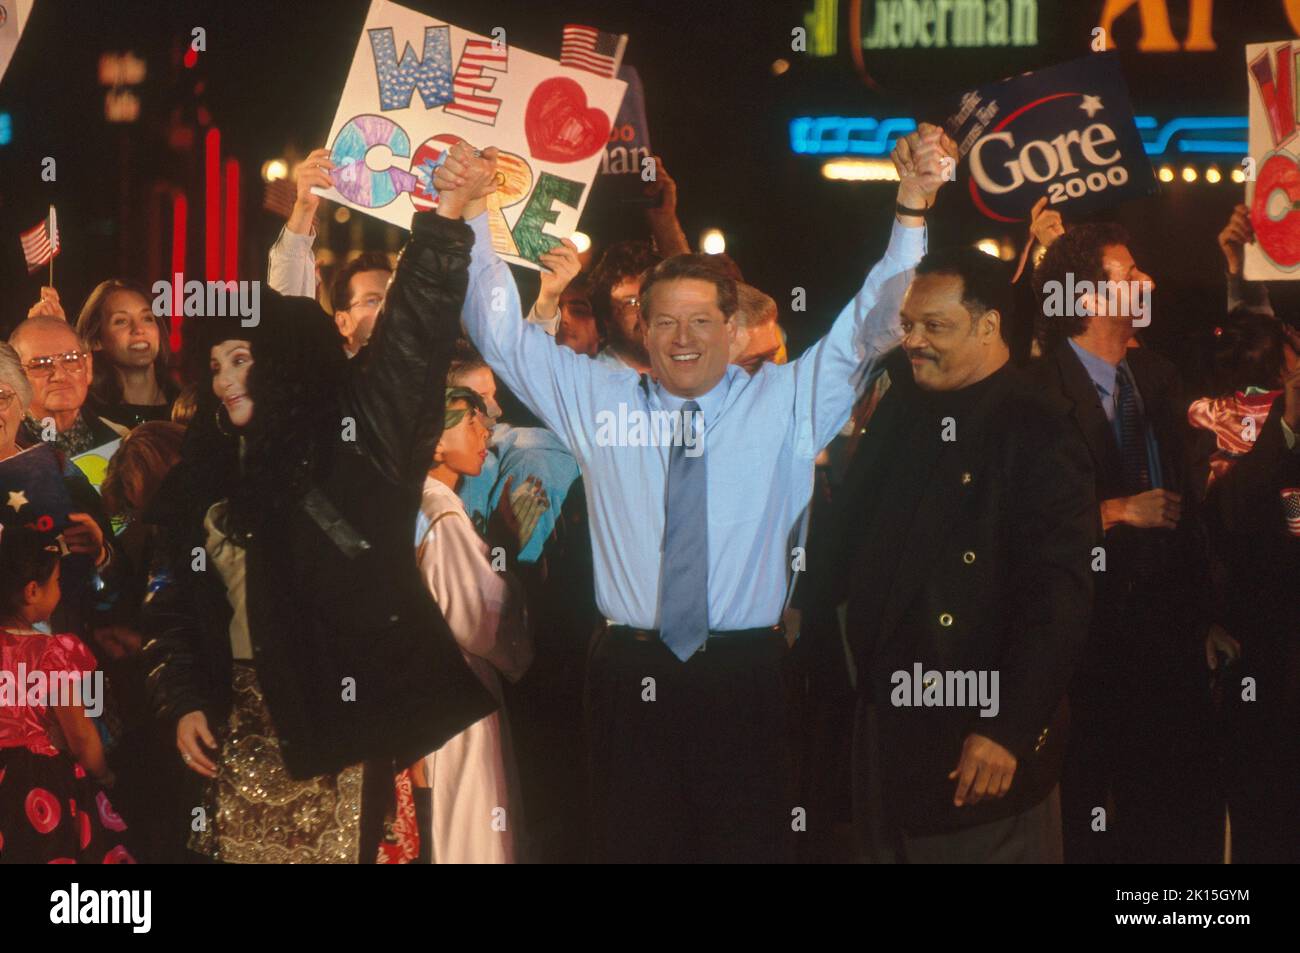 Il vicepresidente al Gore, durante la sua campagna presidenziale, in un raduno il 31 ottobre 2000, a Westwood Village, Los Angeles, California. Al Gore (nato il 31 marzo 1948) è stato Vice Presidente degli Stati Uniti nel 45th dal 1993 al 2001 sotto il presidente Bill Clinton. È un attivista ambientale, scrittore e uomo d'affari. Foto Stock